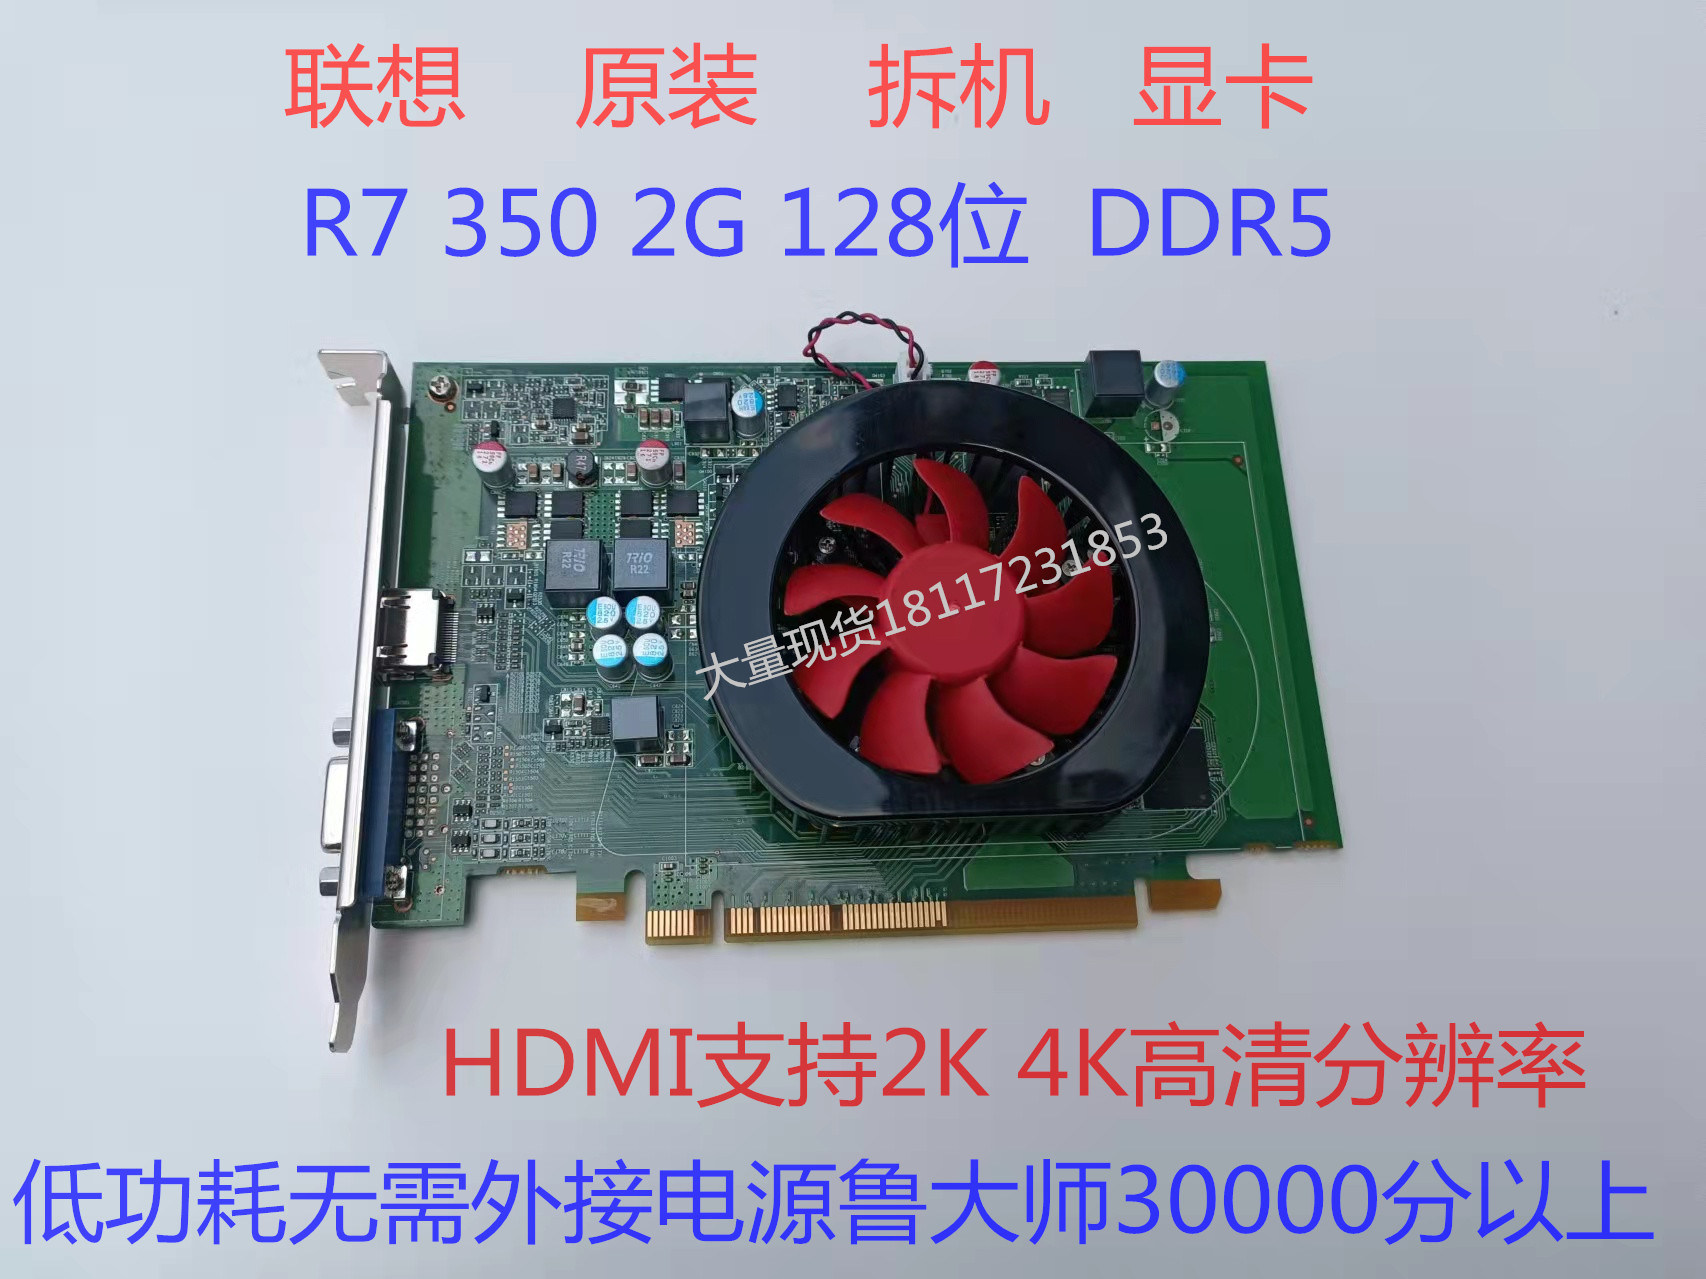 原装显卡 R7 350 2G 4G显卡 DDR5 128位4k60hz高清显卡